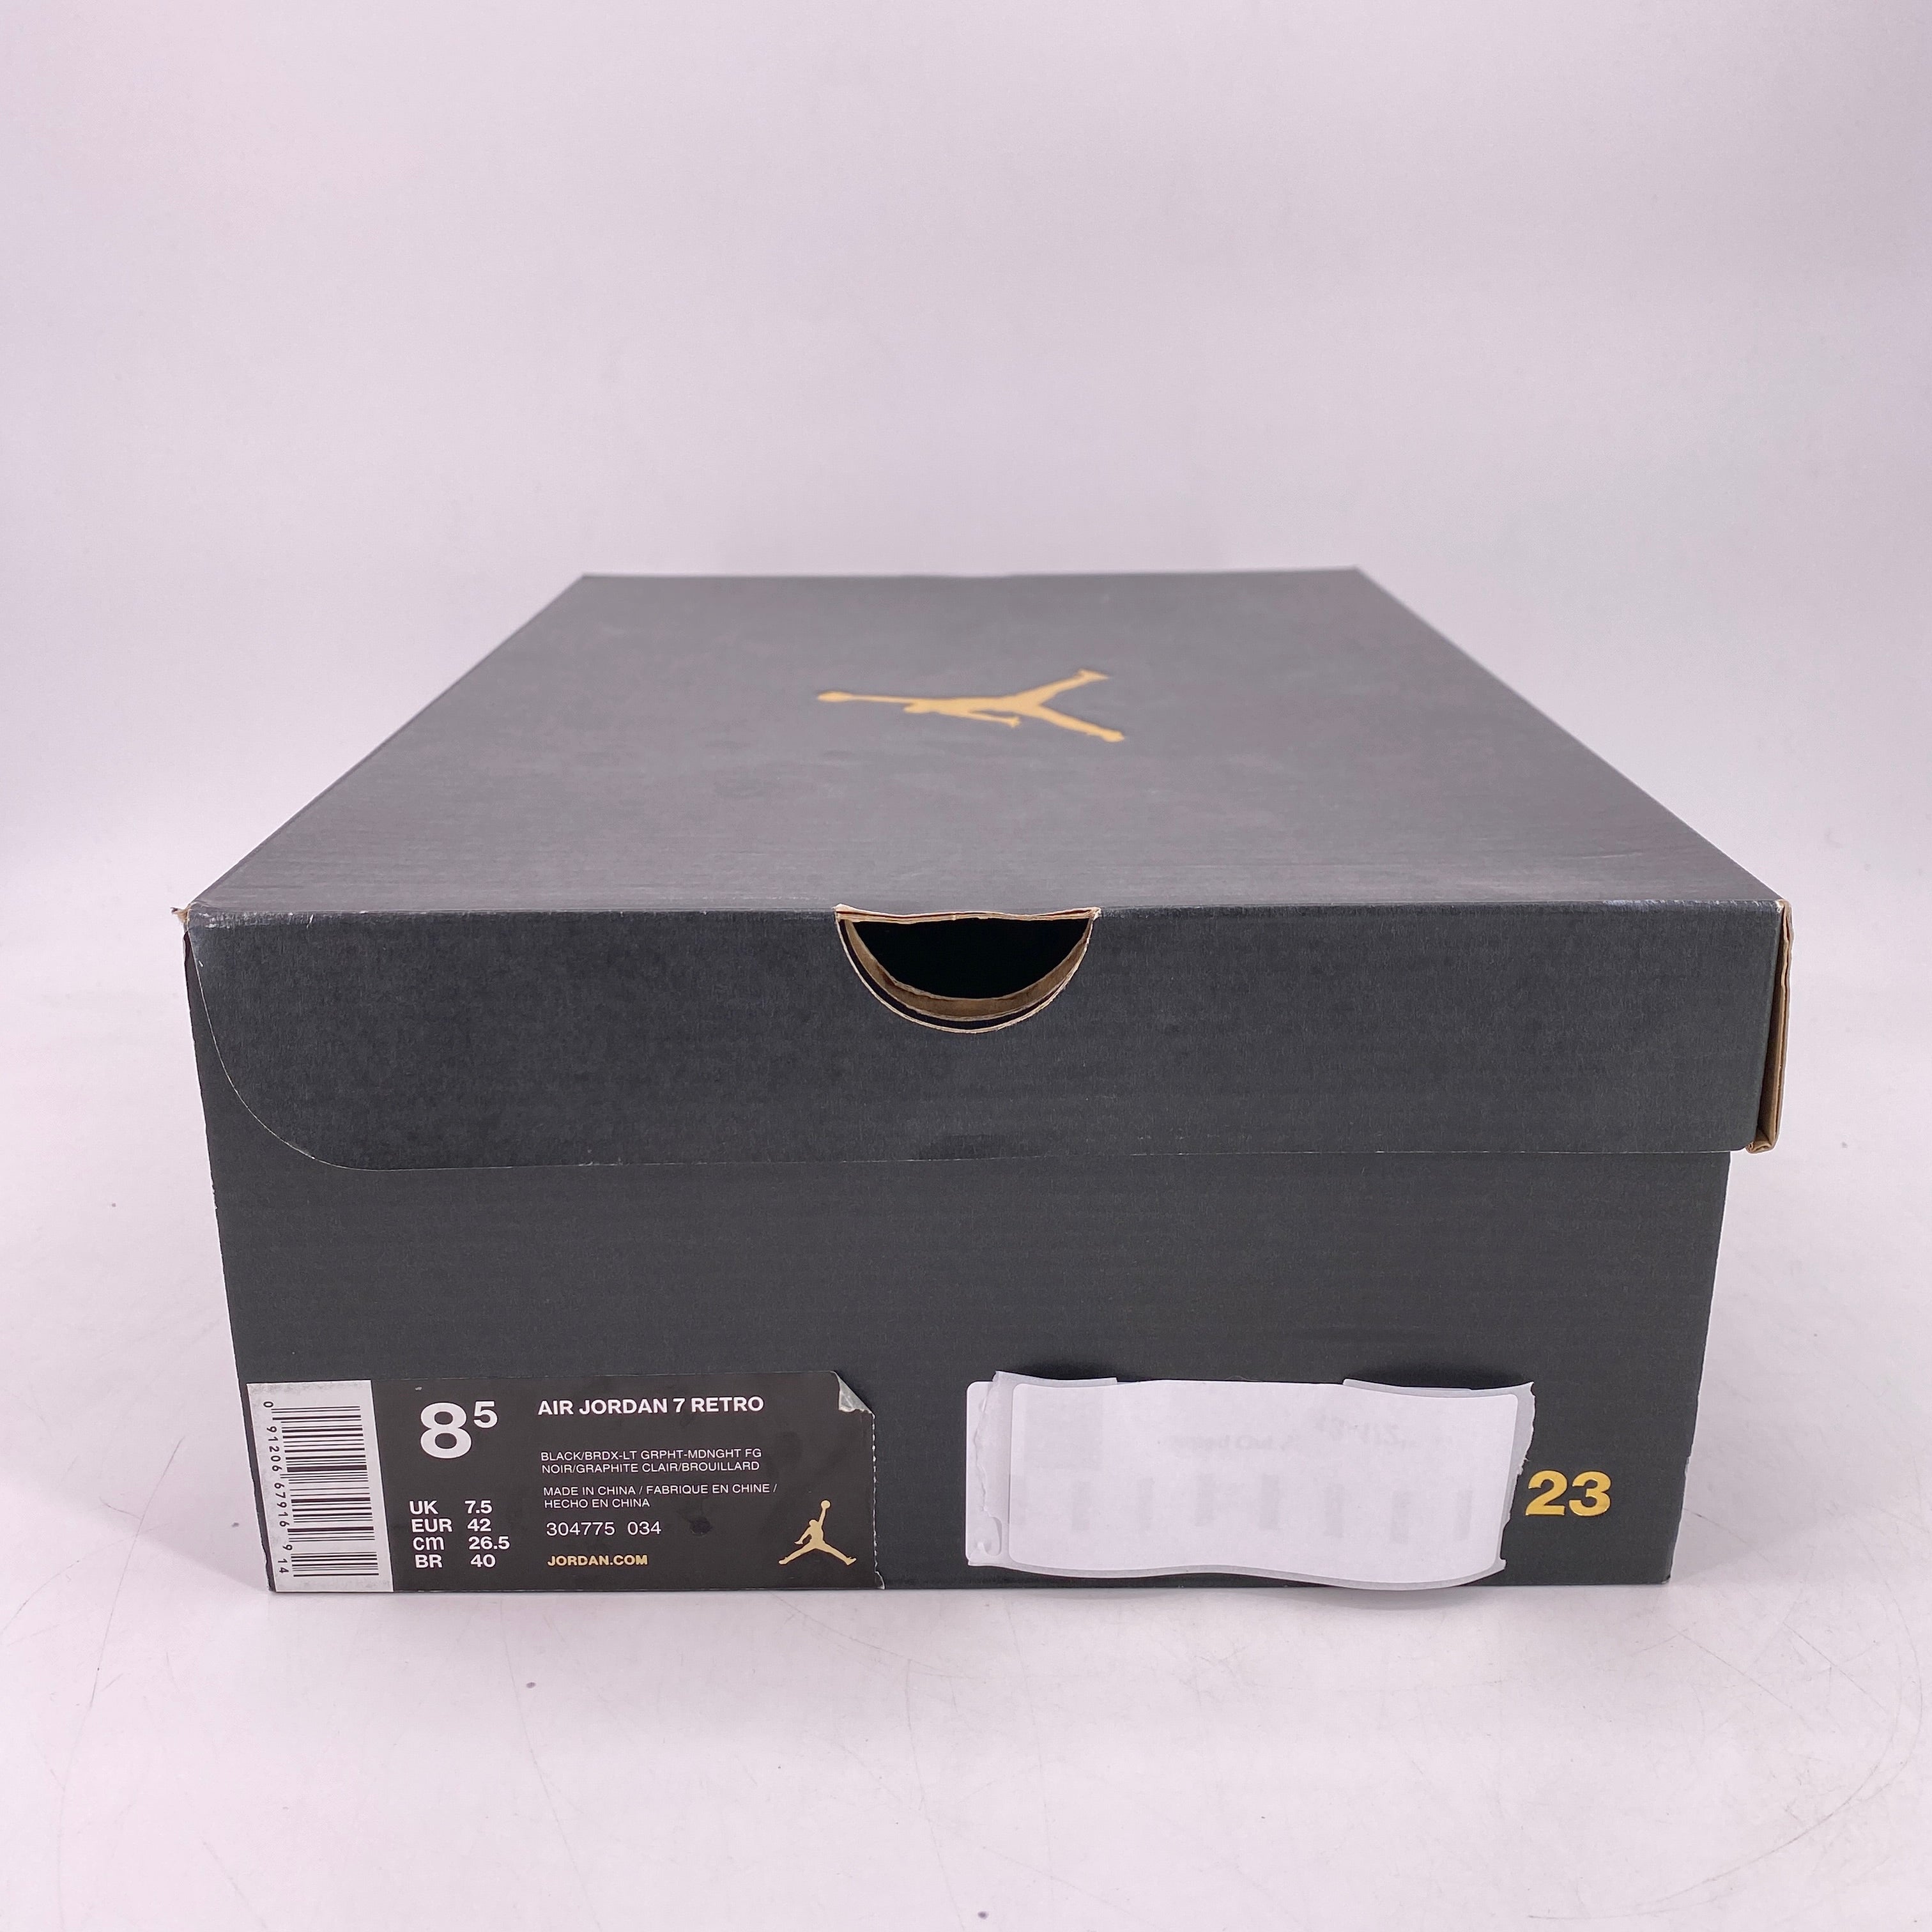 Air Jordan 7 Retro &quot;Bordeaux&quot; 2015 Used Size 8.5